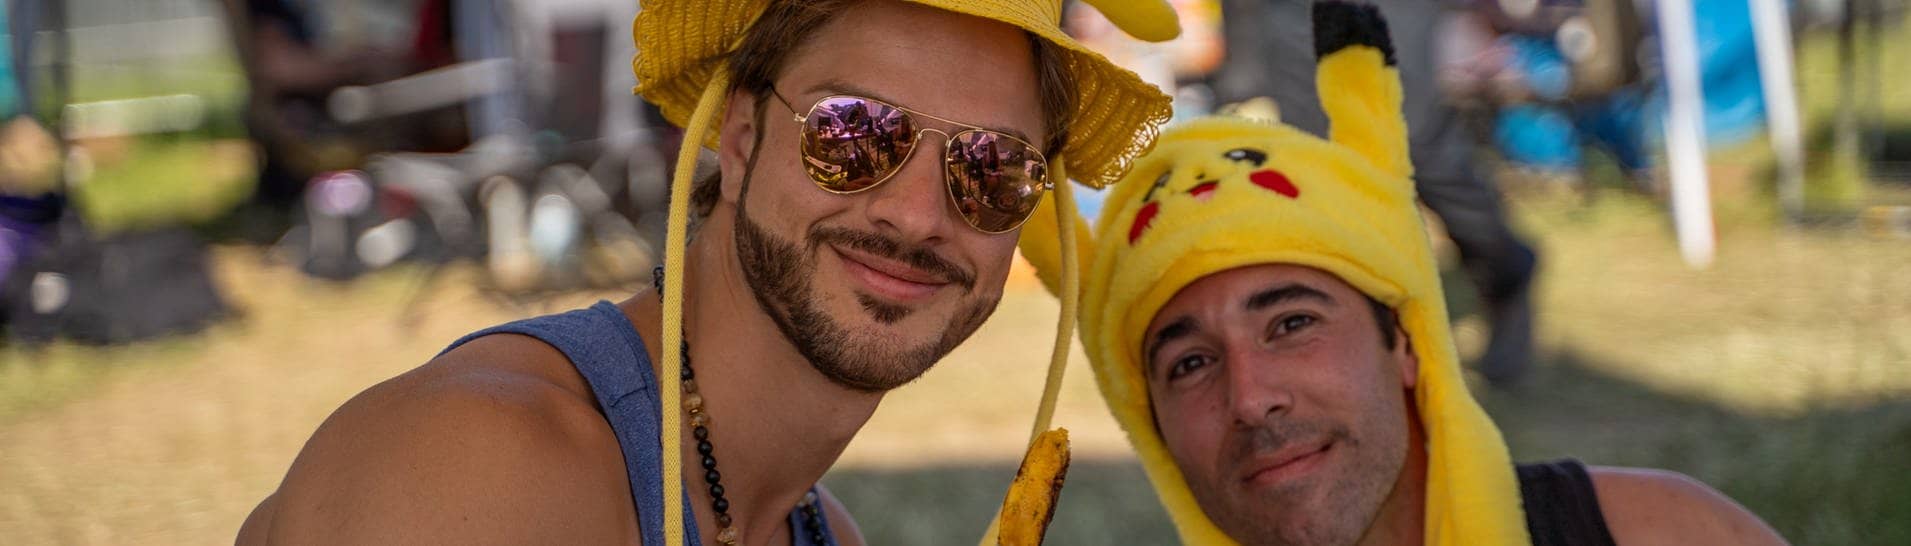 Zwei Männer mit gelben Pikachu-Hüten sind vor Zelten bei Rock am Ring (Foto: SWR3, SWR3 / Ronny Krautz)